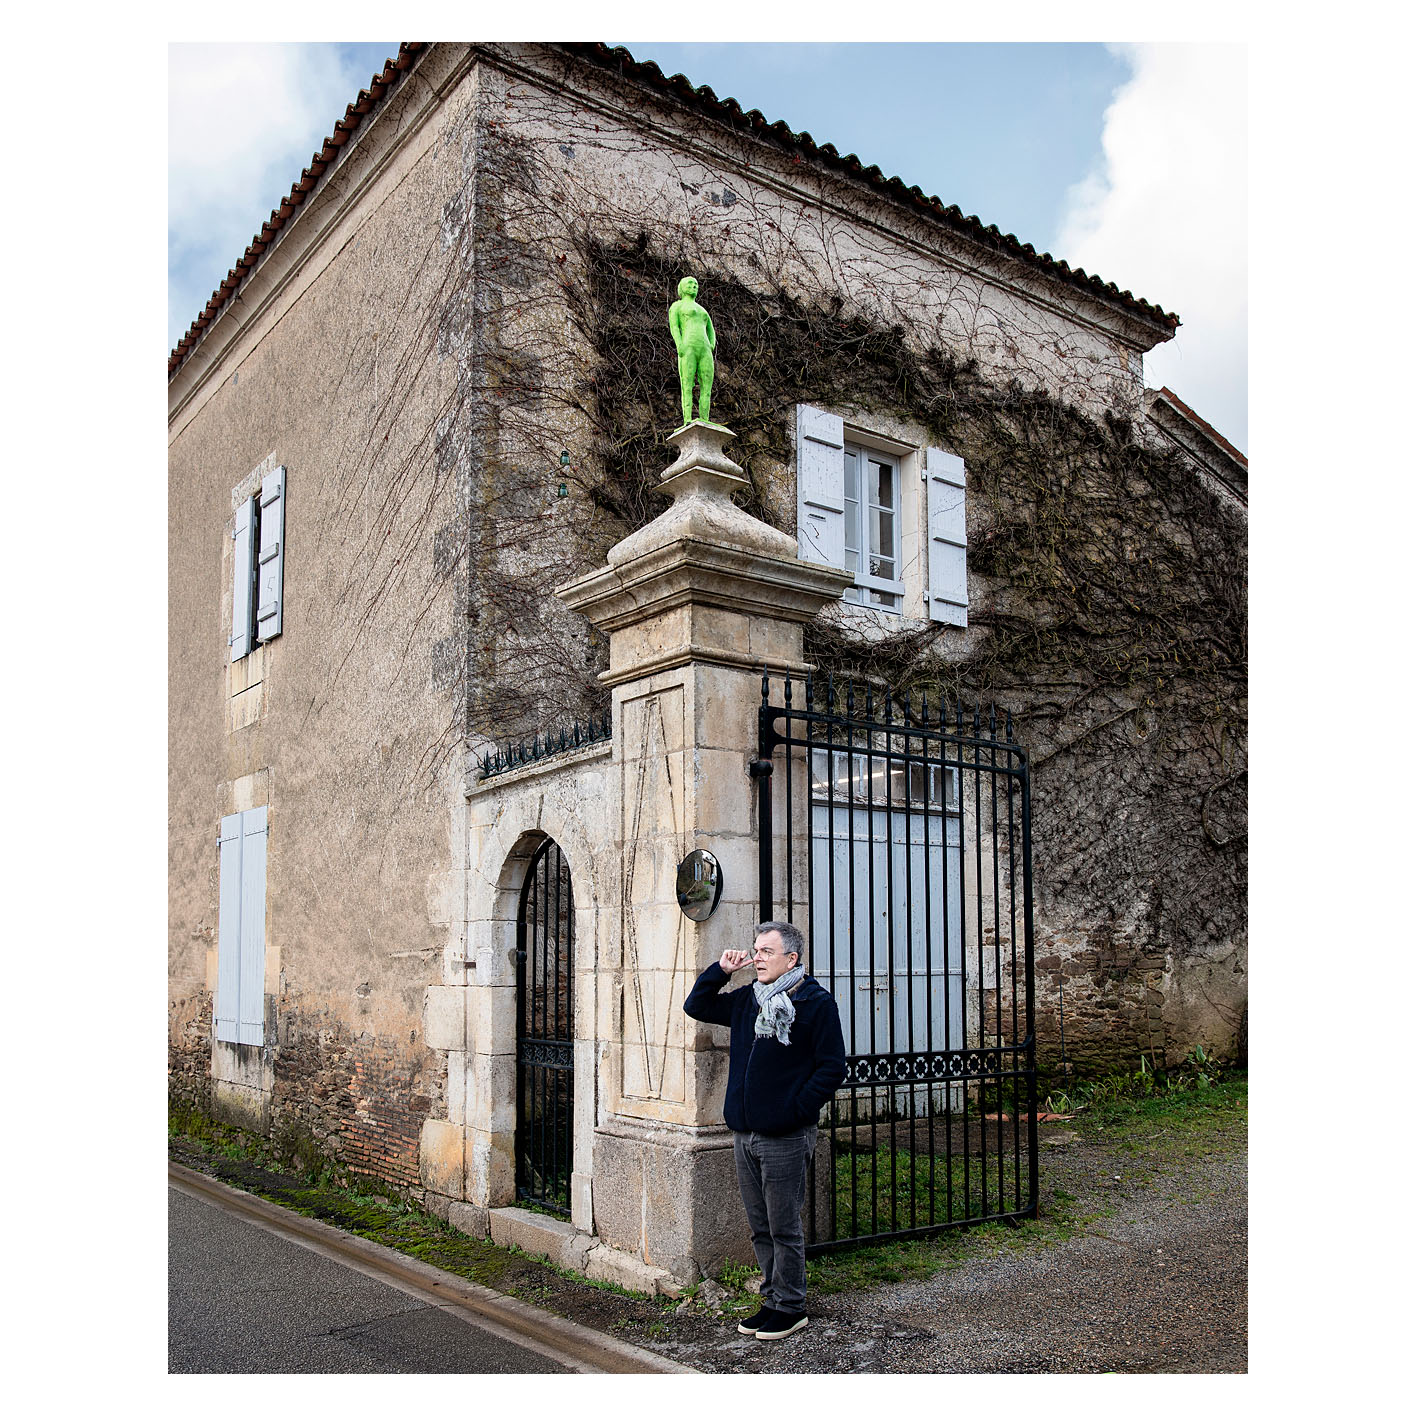 Fabrice Hyber à l'entrée de sa propriété de Mareuil sur Lay Dissais, Vendée. De chaque côté du portail trône un homme de Bessines.